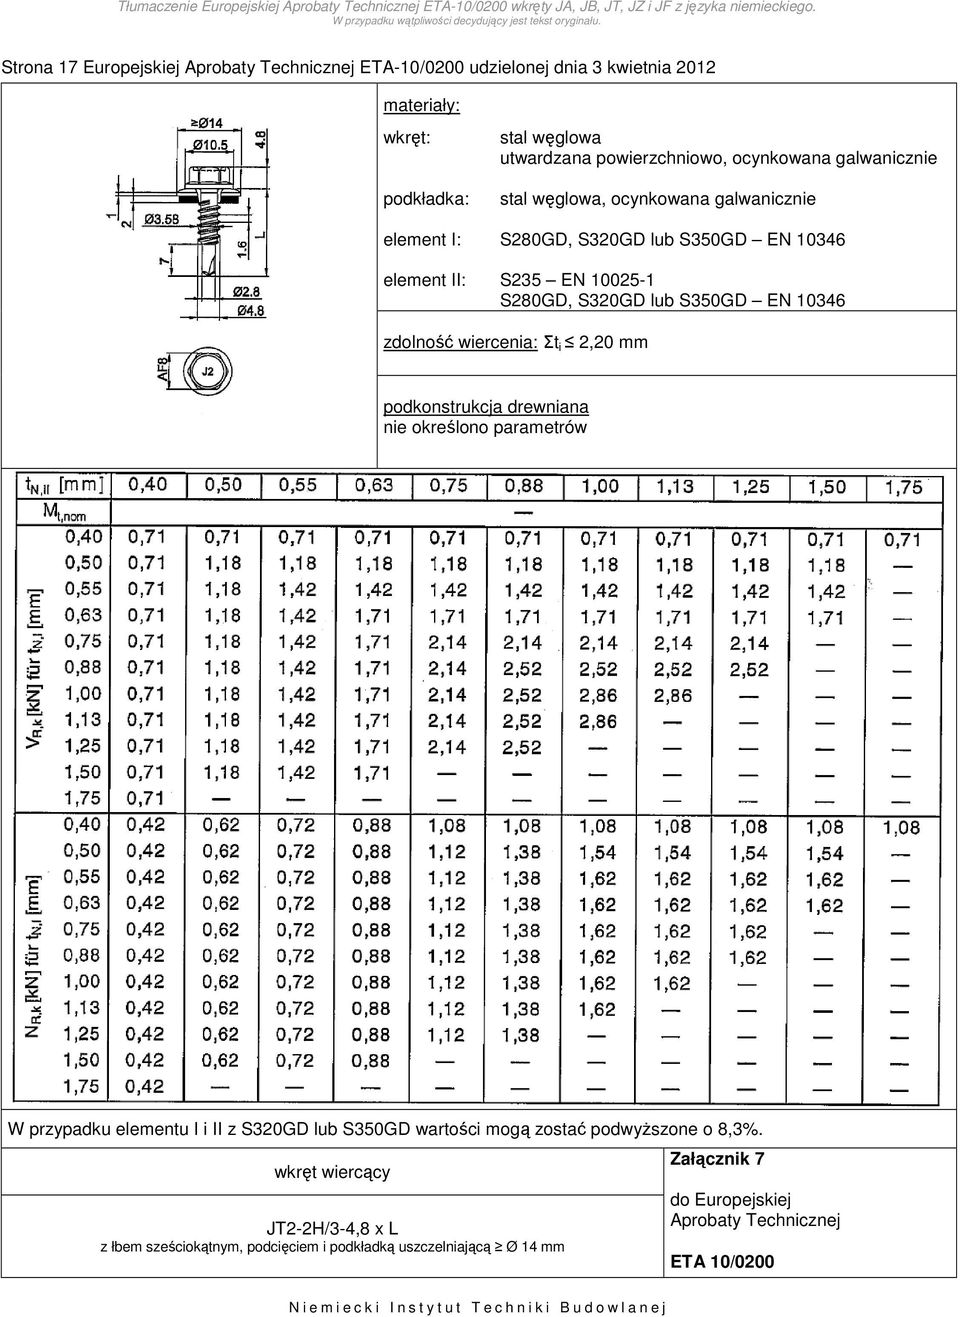 wiercenia: Σt i 2,20 mm W przypadku elementu I i II z S320GD lub S350GD wartości mogą zostać podwyższone